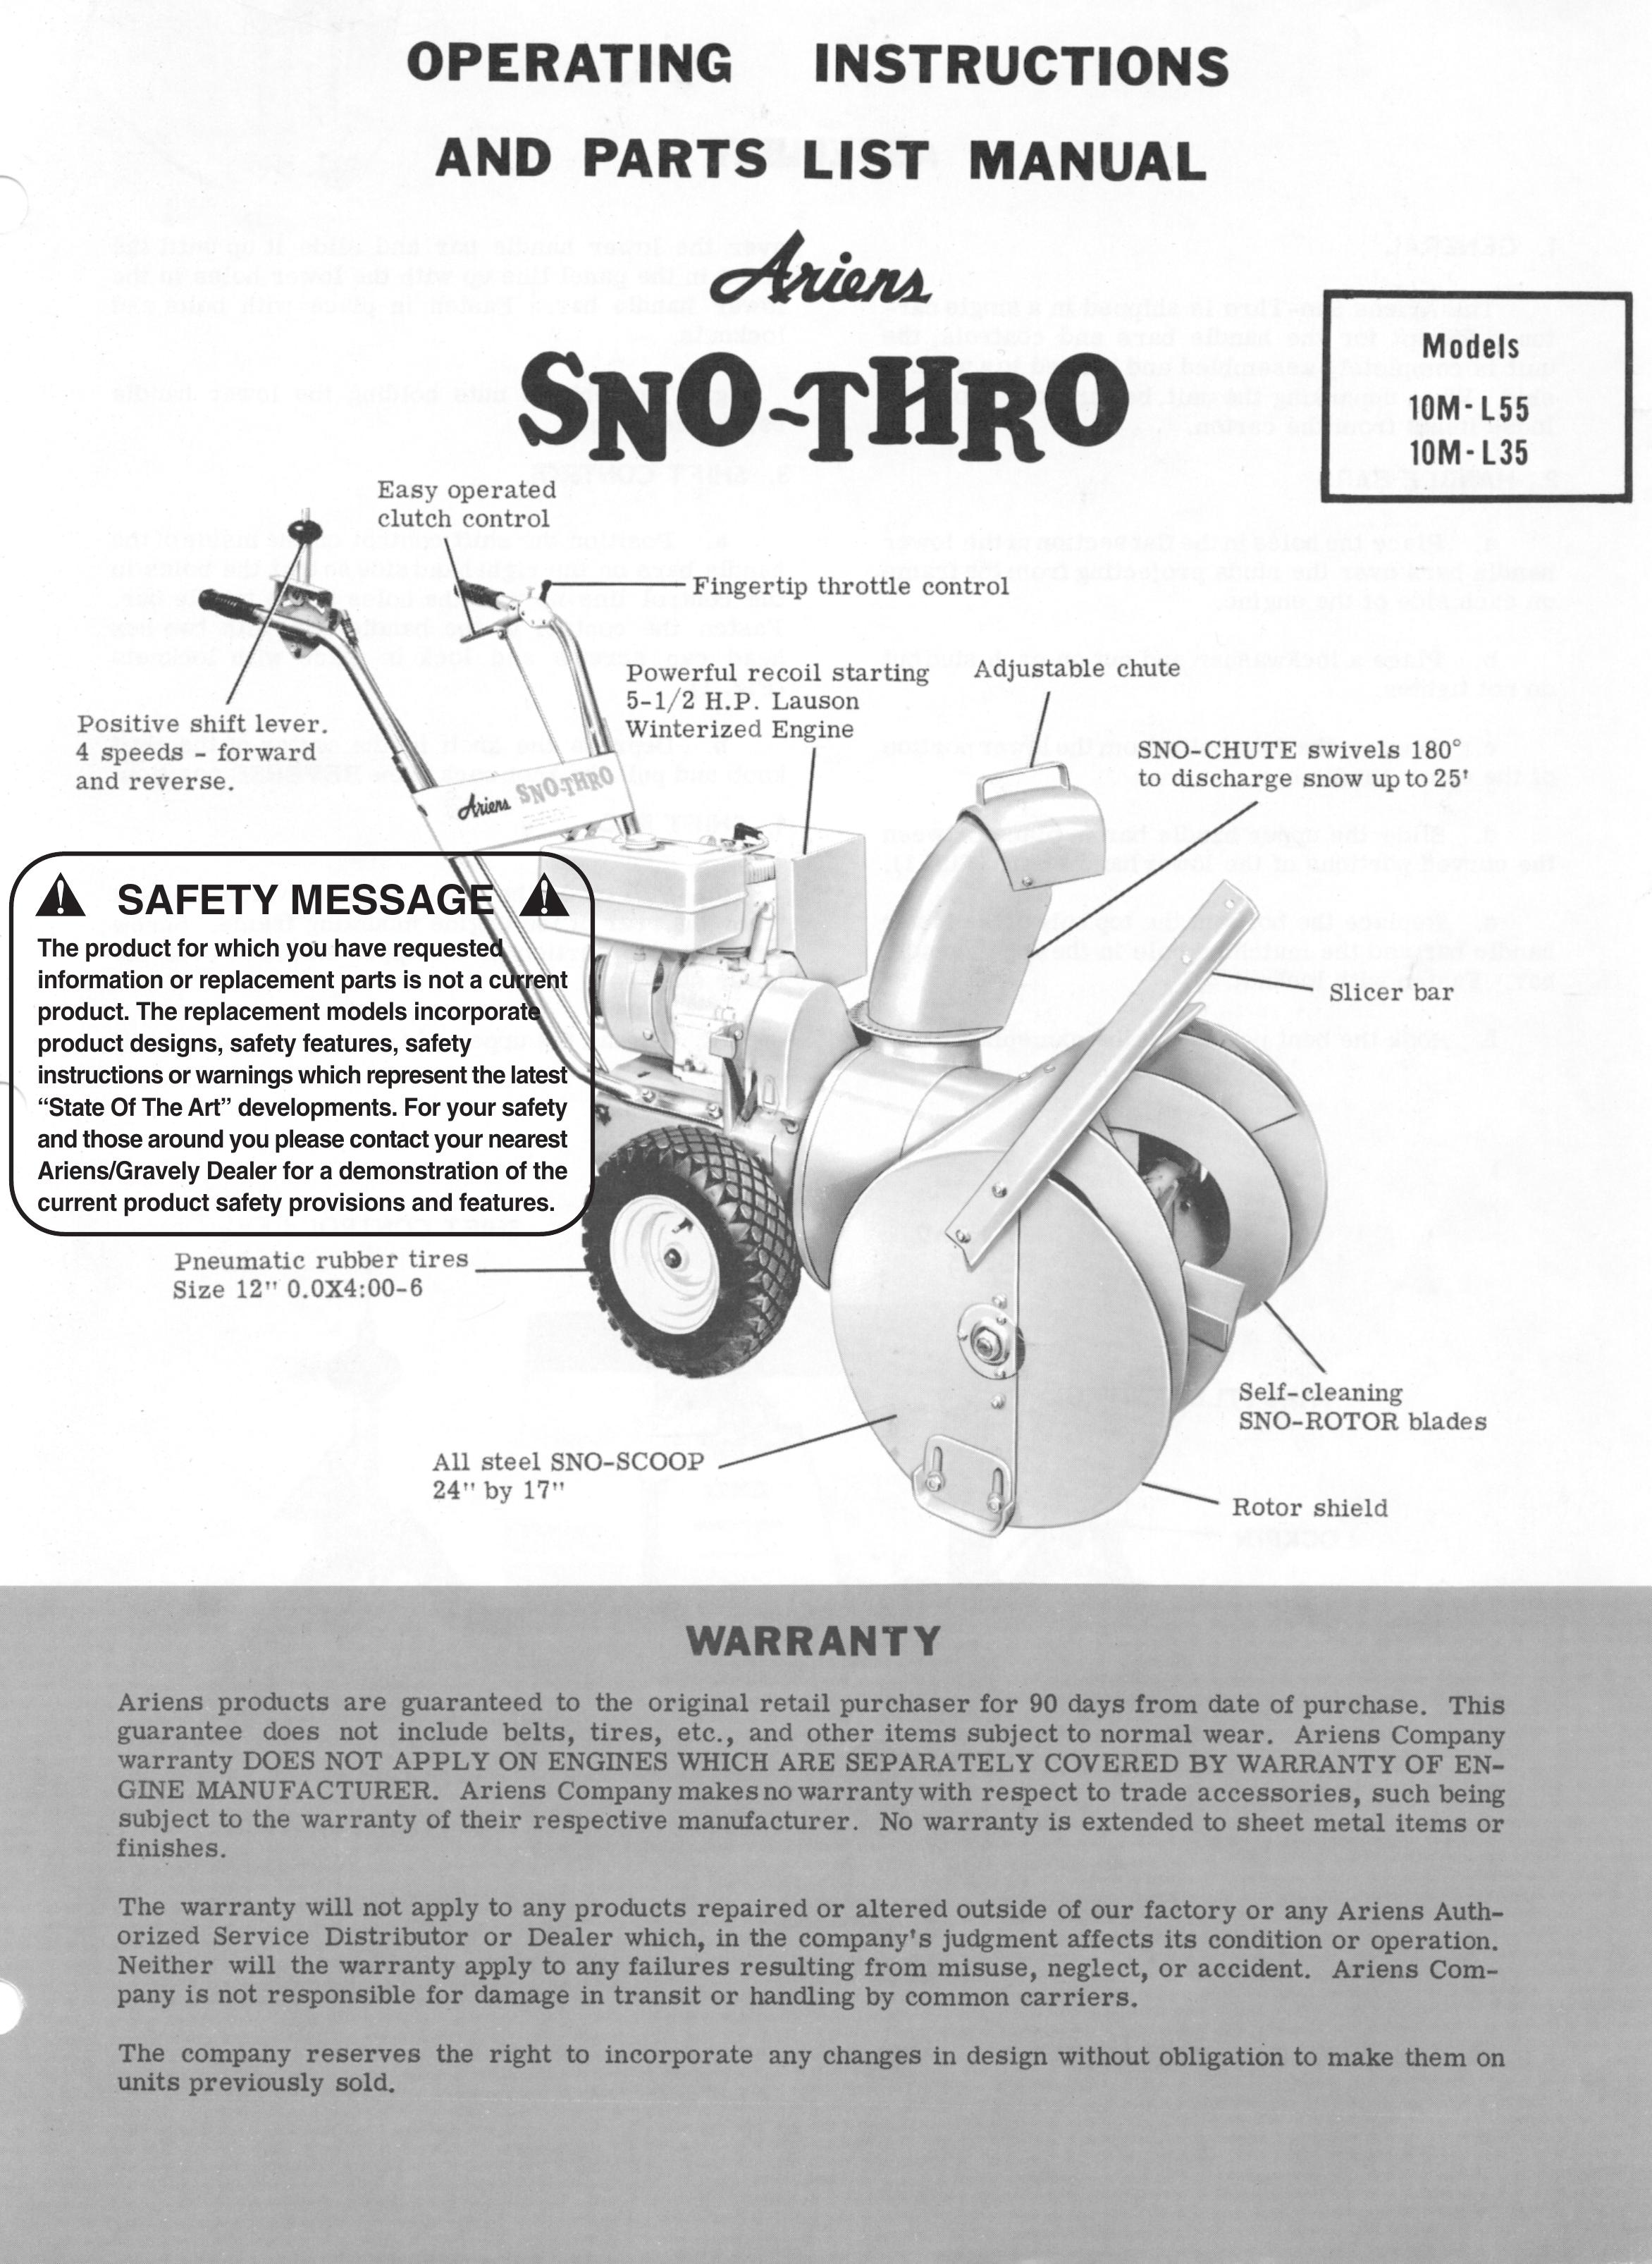 Ariens 10M-L55 Snow Blower User Manual